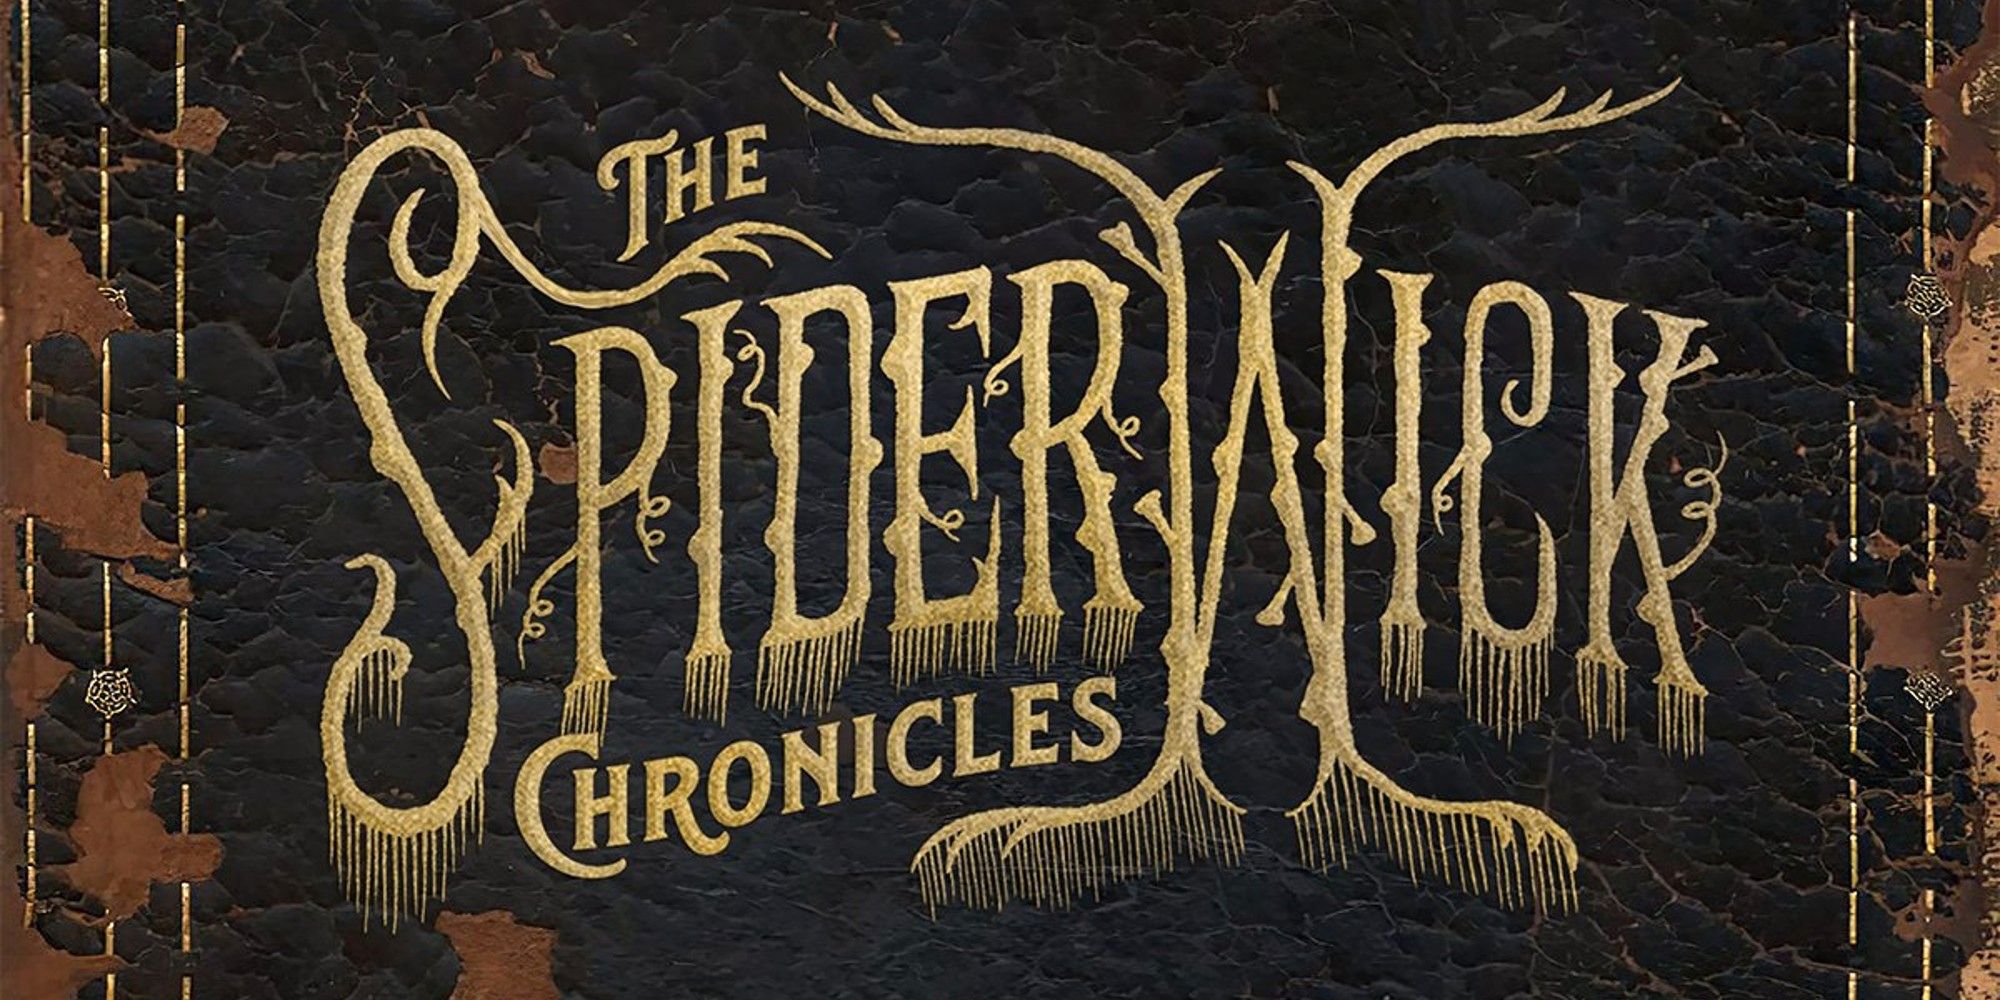 Espectáculo de Spiderwick Chronicles en desarrollo en Disney +